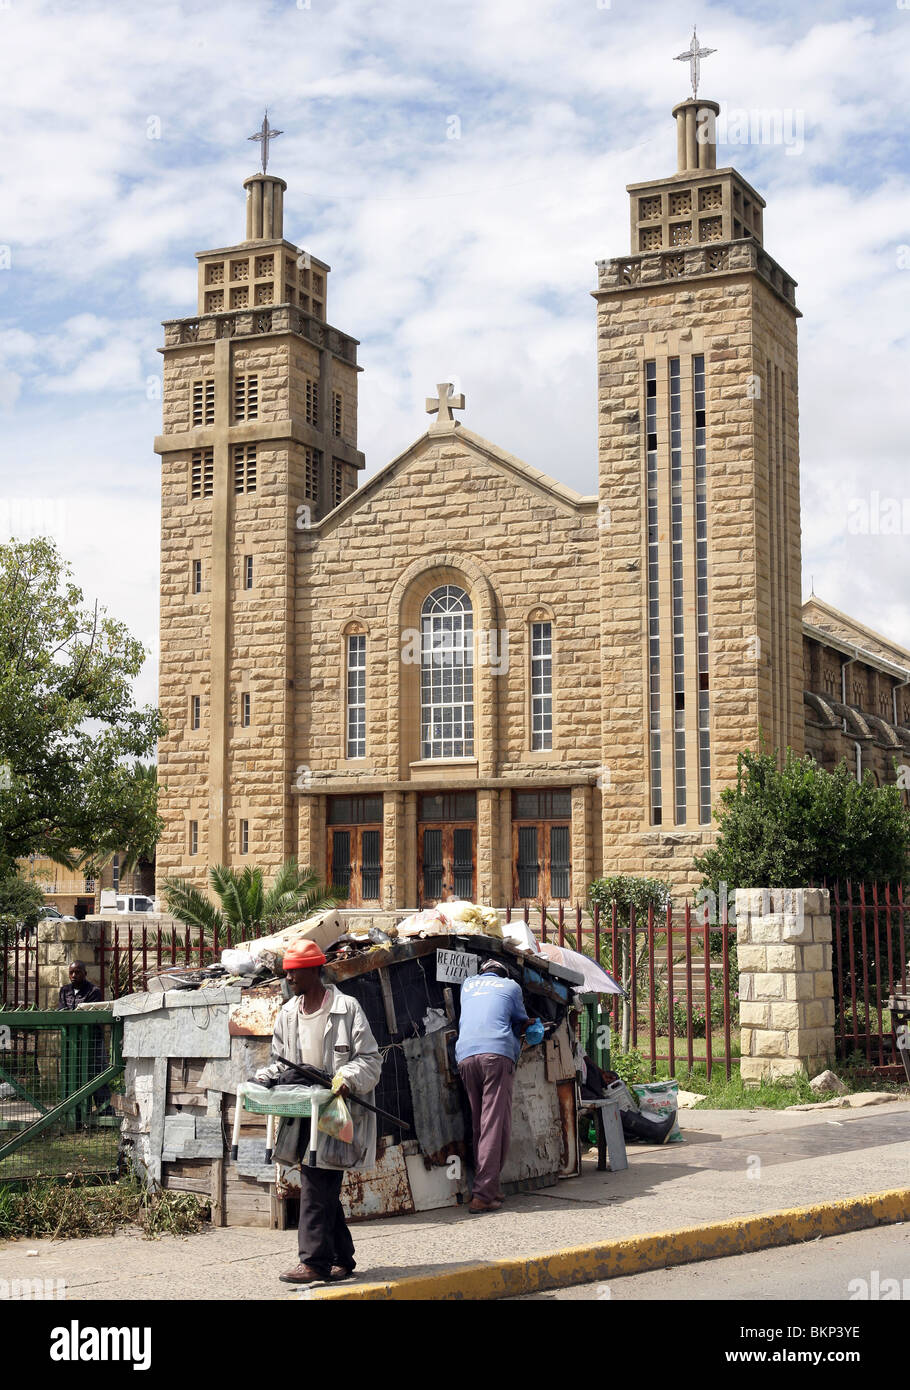 Cathédrale catholique romaine à Maseru, capitale du Lesotho Banque D'Images